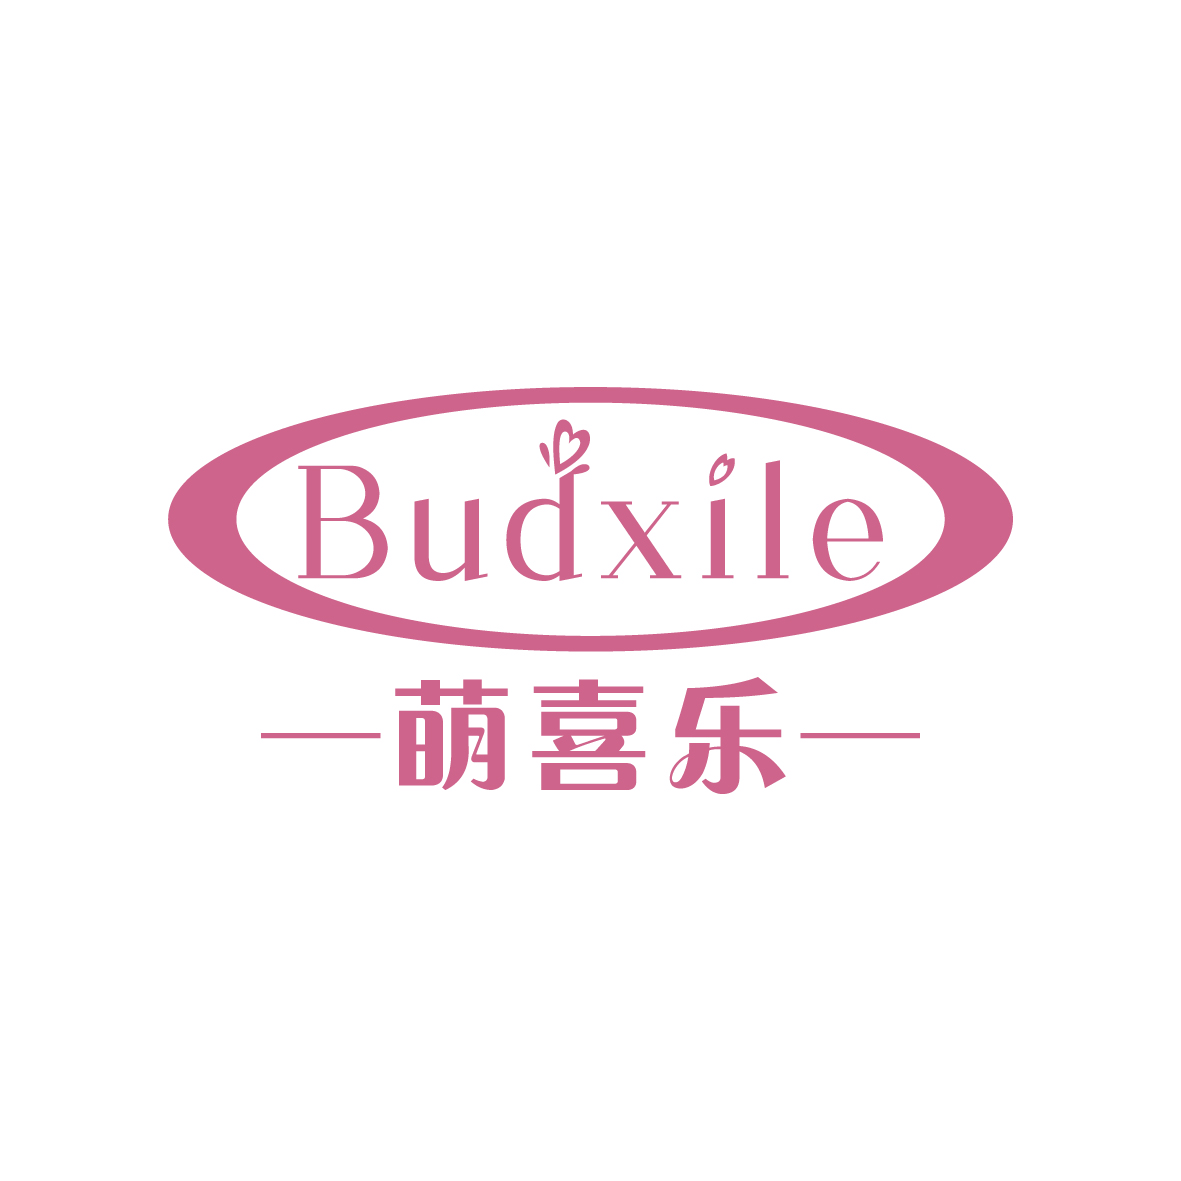 广州品翰文化发展有限公司商标萌喜乐 BUDXILE（03类）商标买卖平台报价，上哪个平台最省钱？